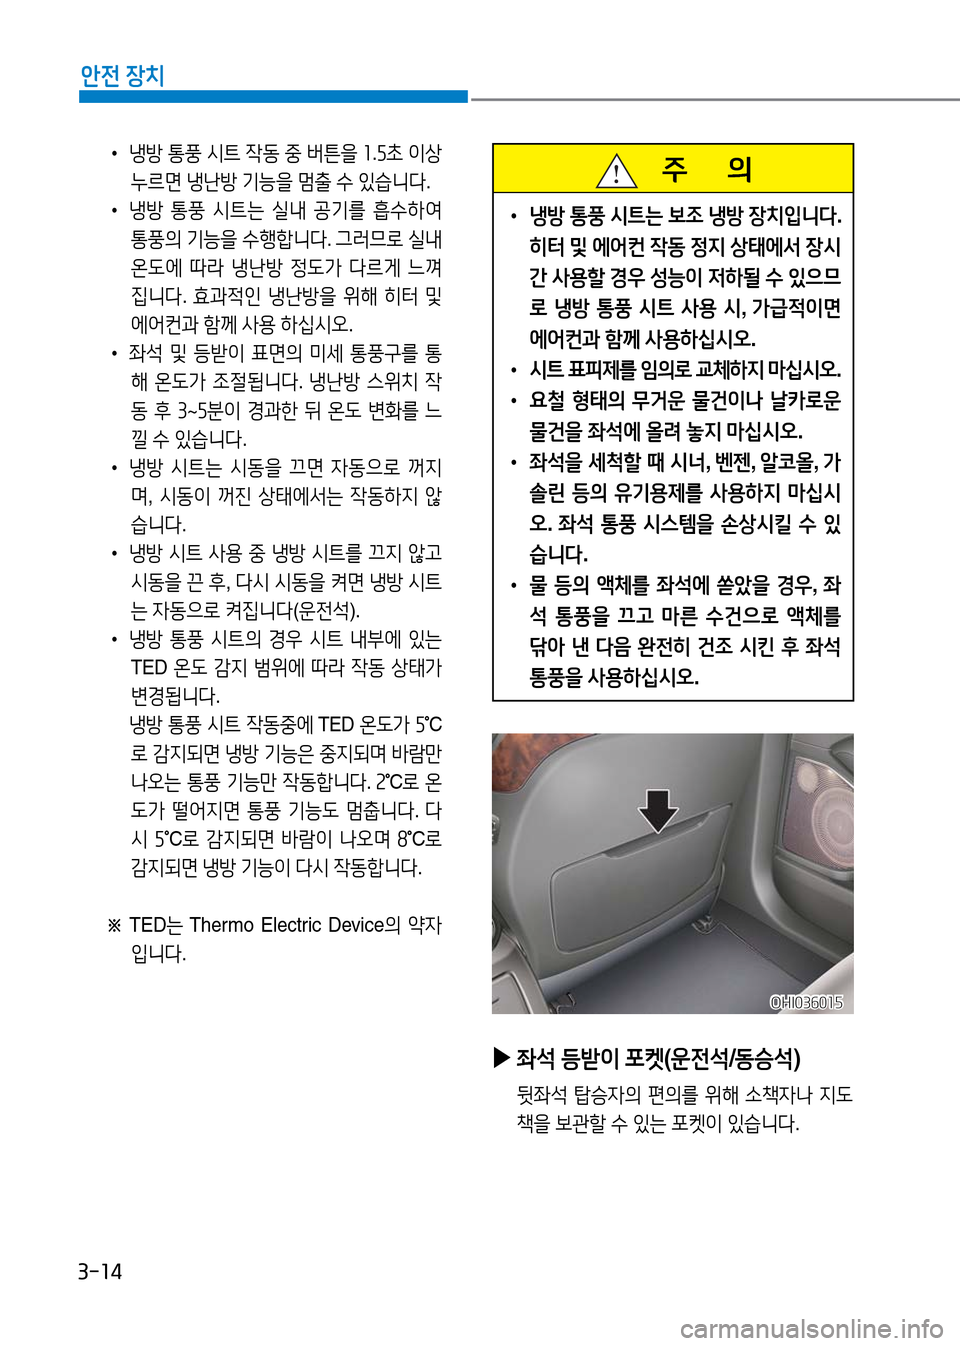 Hyundai Genesis 2016  EQ900 HI - 사용 설명서 (in Korean) 3-14
안전 장치
 •냉방 통풍 시트 작동 중 버튼을 1.5초 이상 
누르면 냉난방 기능을 멈출 수 있습니다.
 •냉방 통풍 시트는 실내 공기를 흡수하여 
통풍